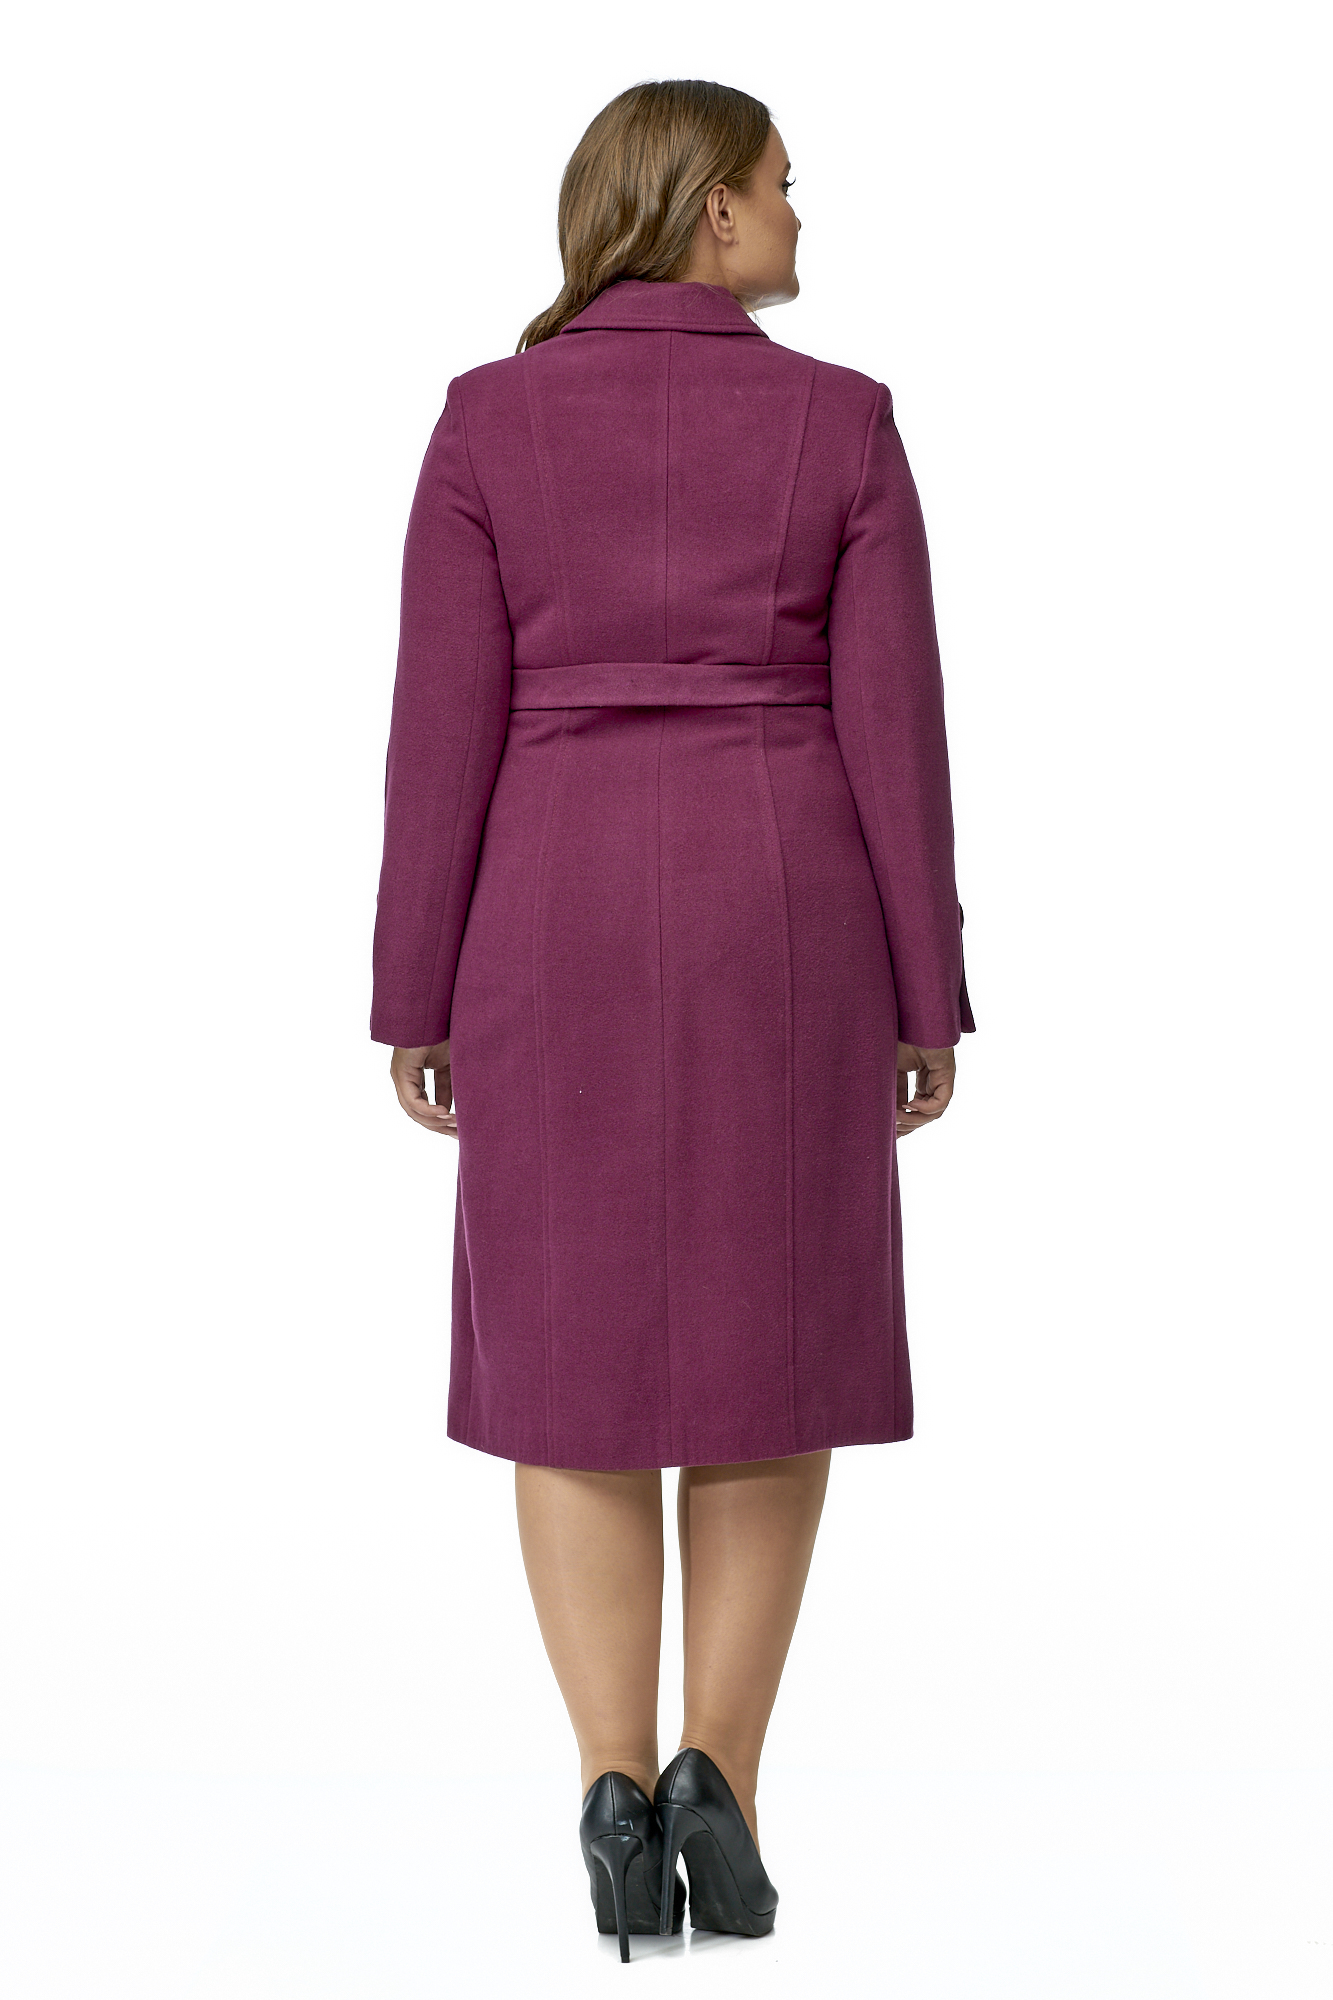 Женское пальто из текстиля с воротником 8002883-3